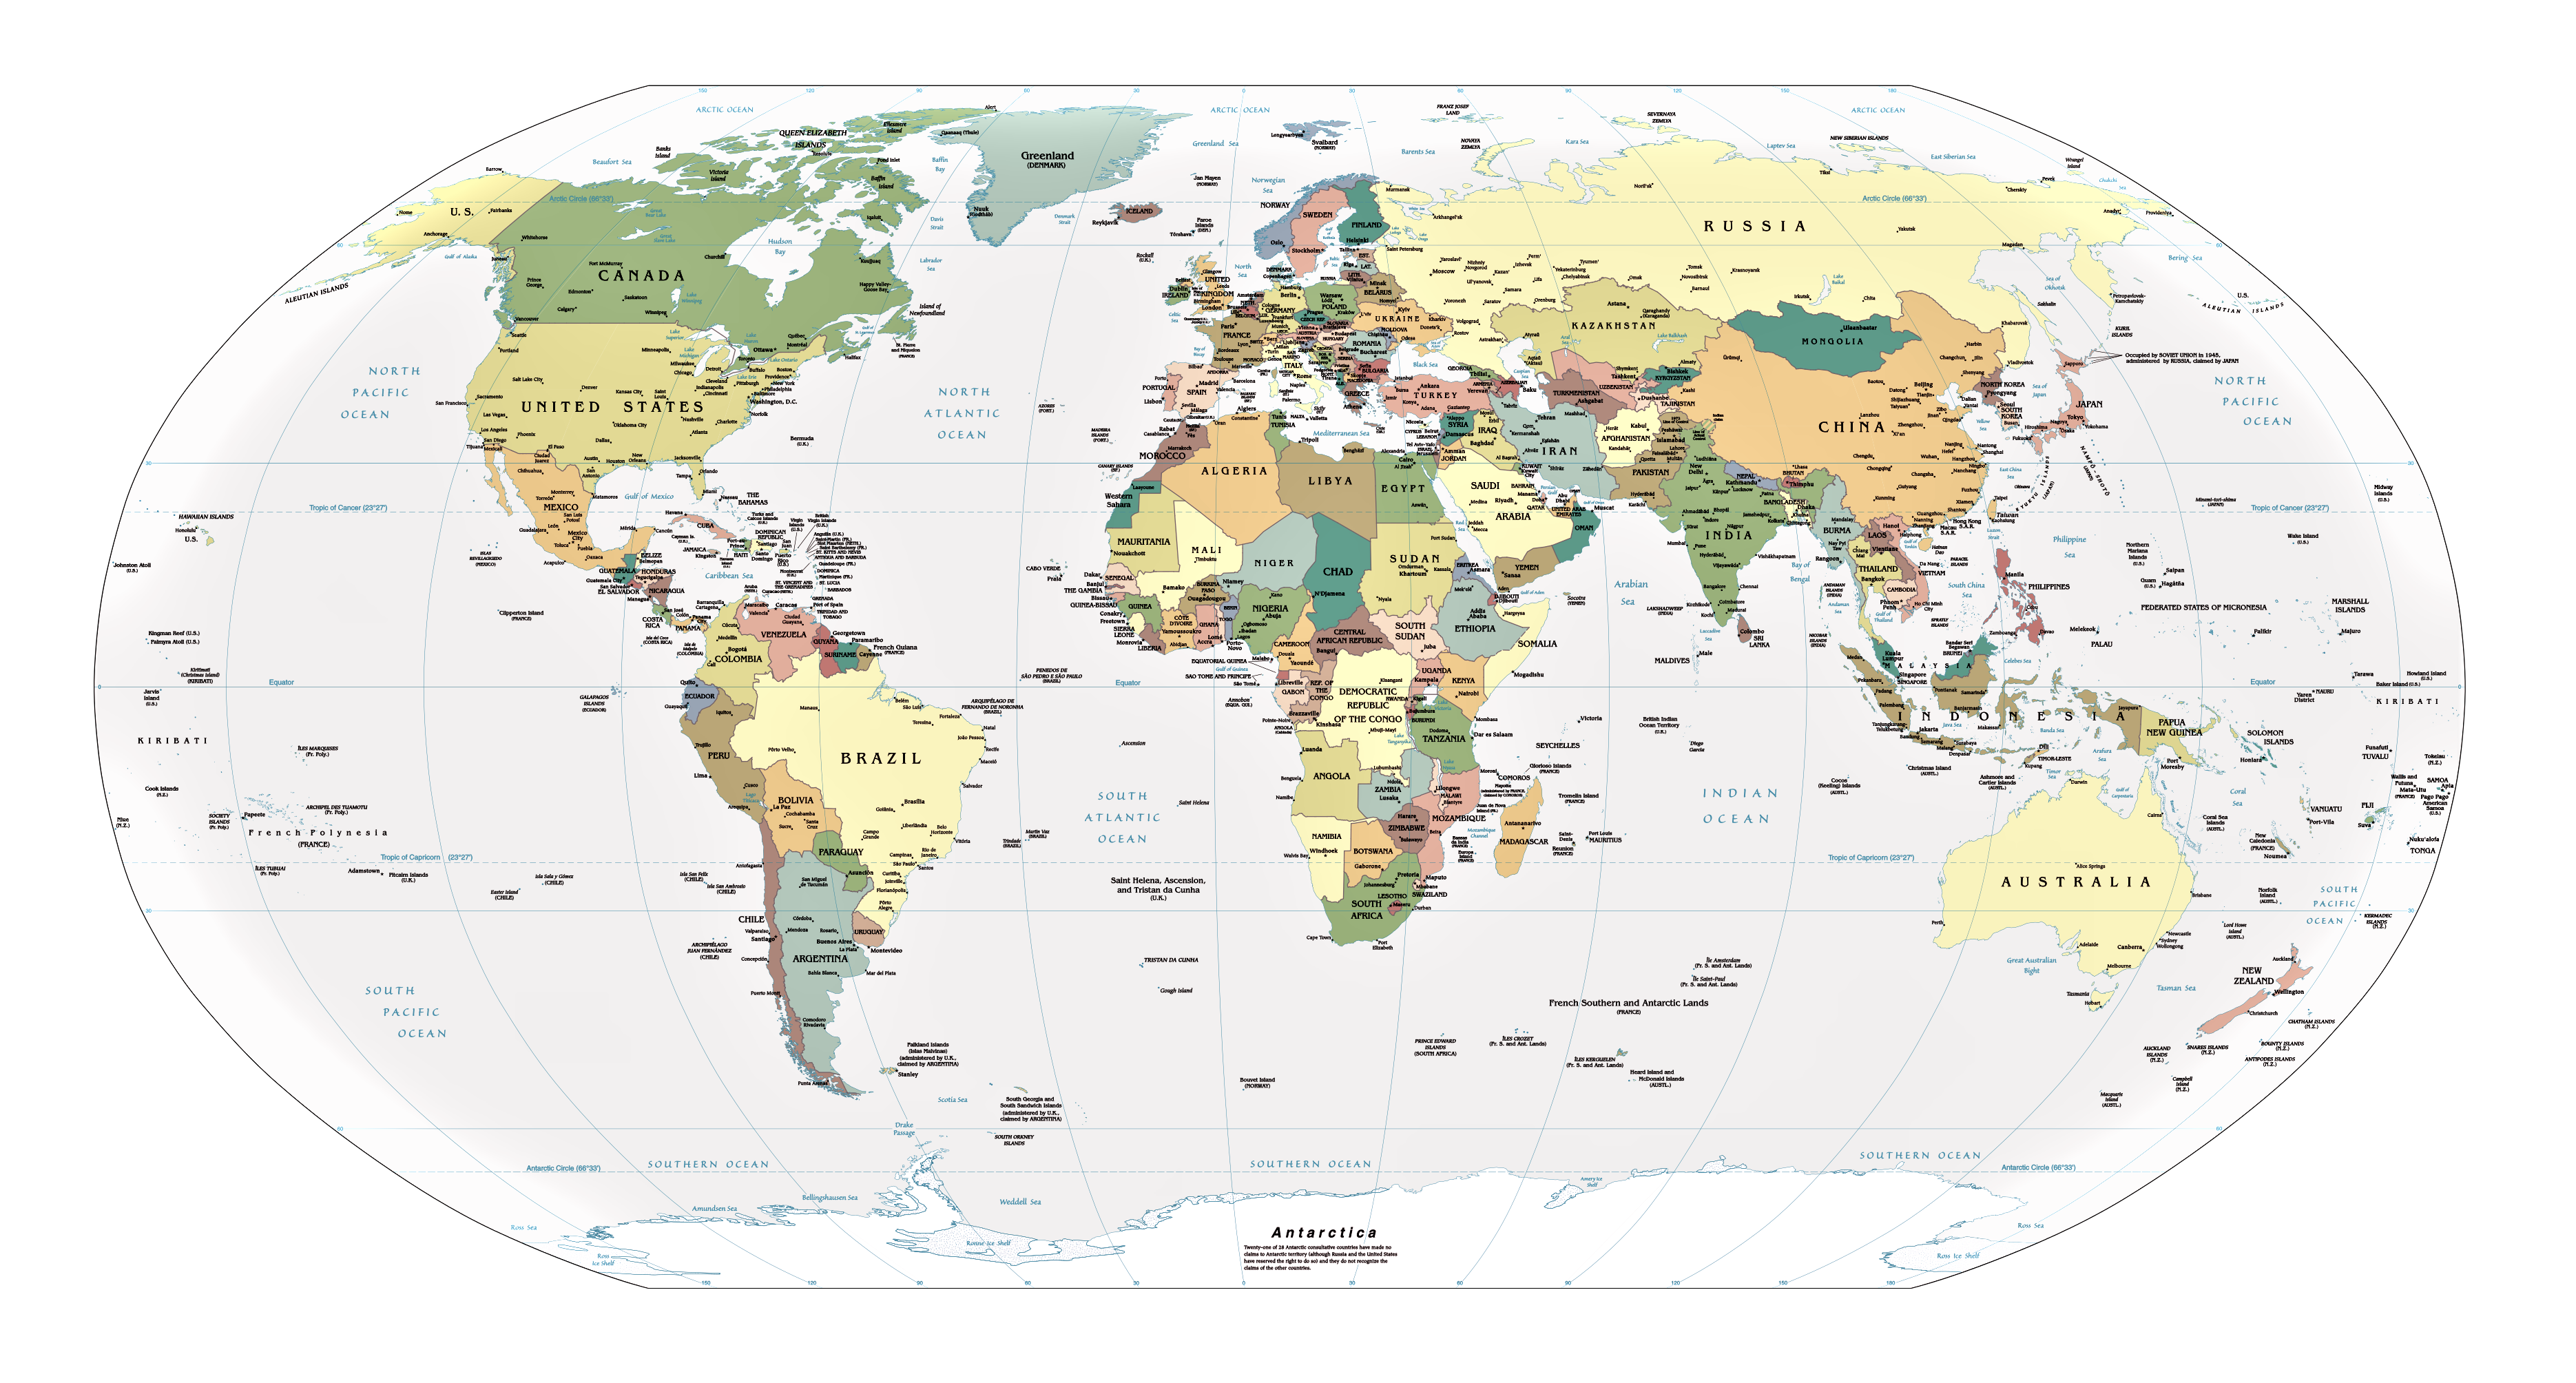 Mapamundi Politico Con Nombres Mapa Del Mundo Con Nombres